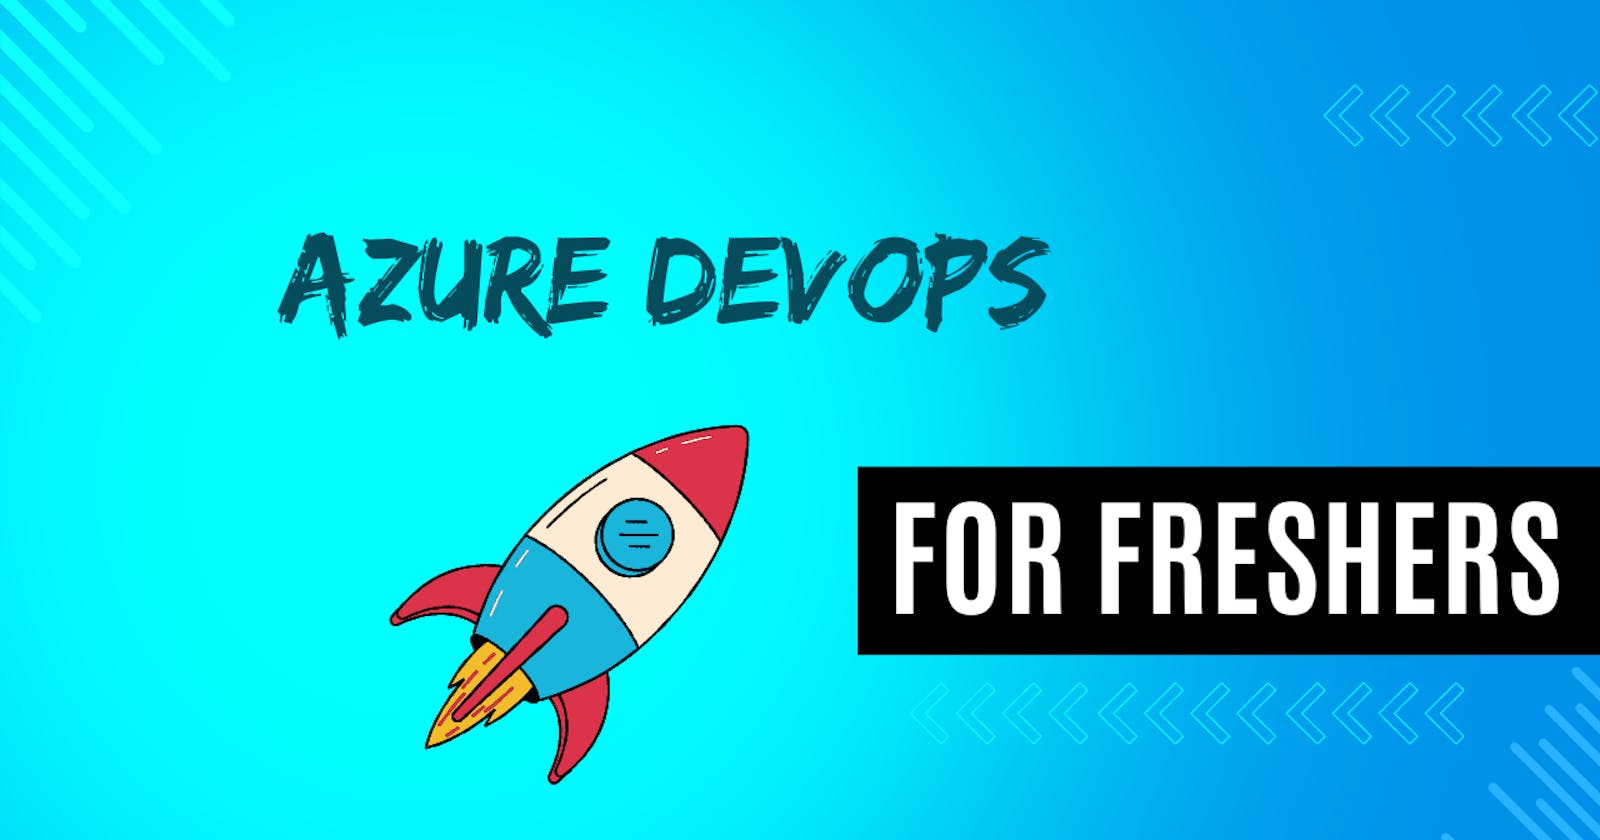 Azure DevOps for Freshers: A Beginner's Guide